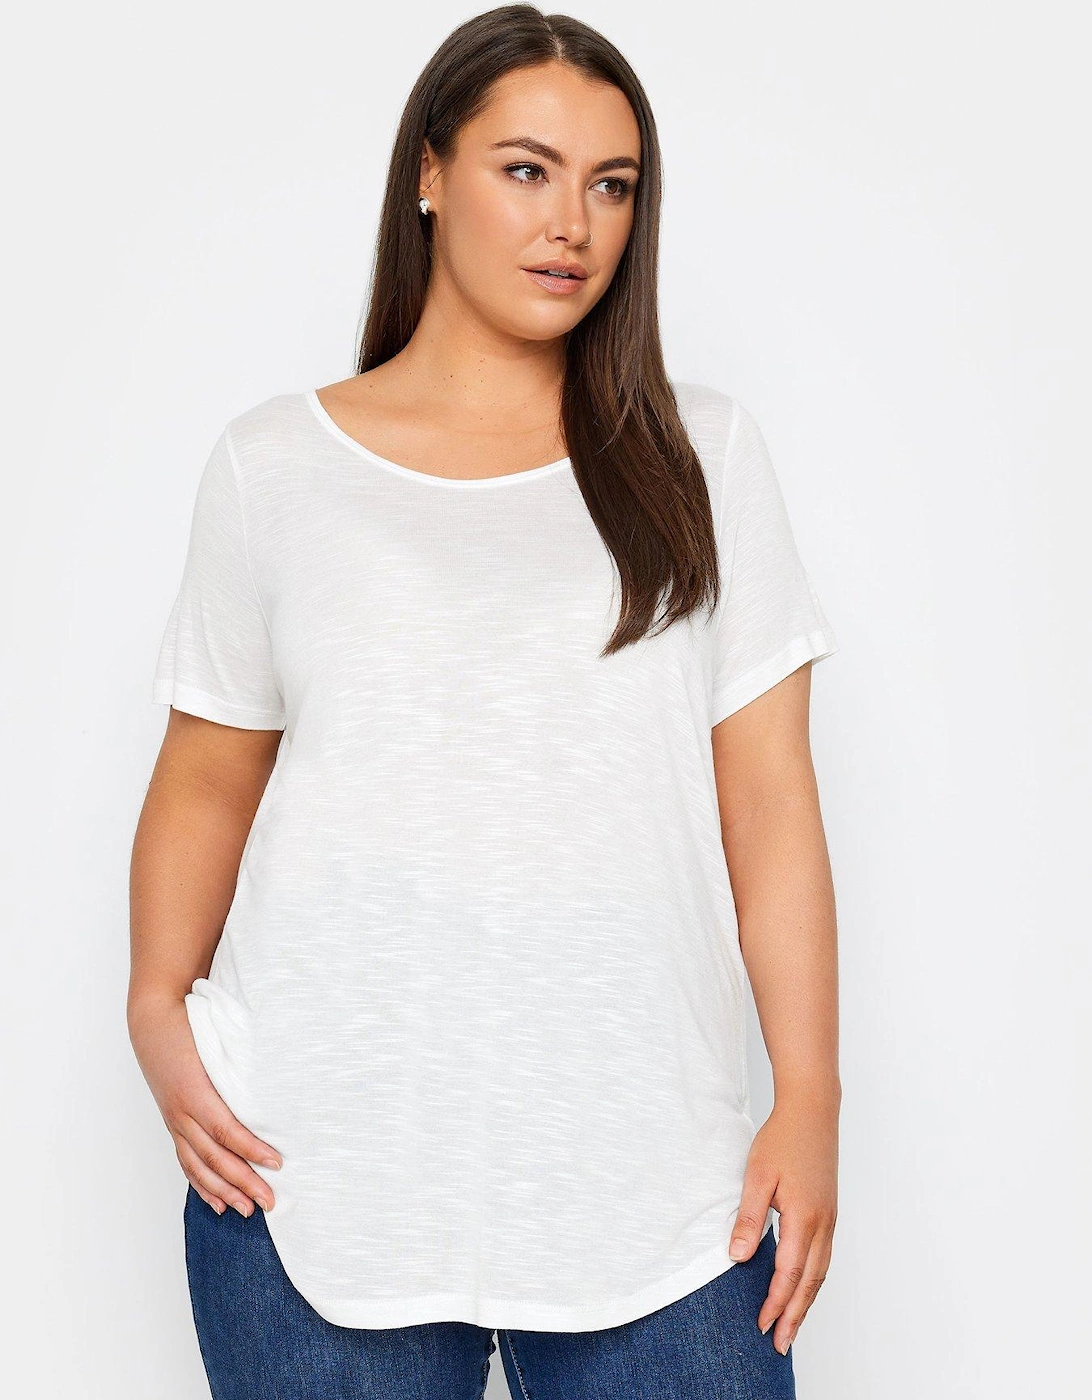 Short Sleeve T-shirt - White, 2 of 1